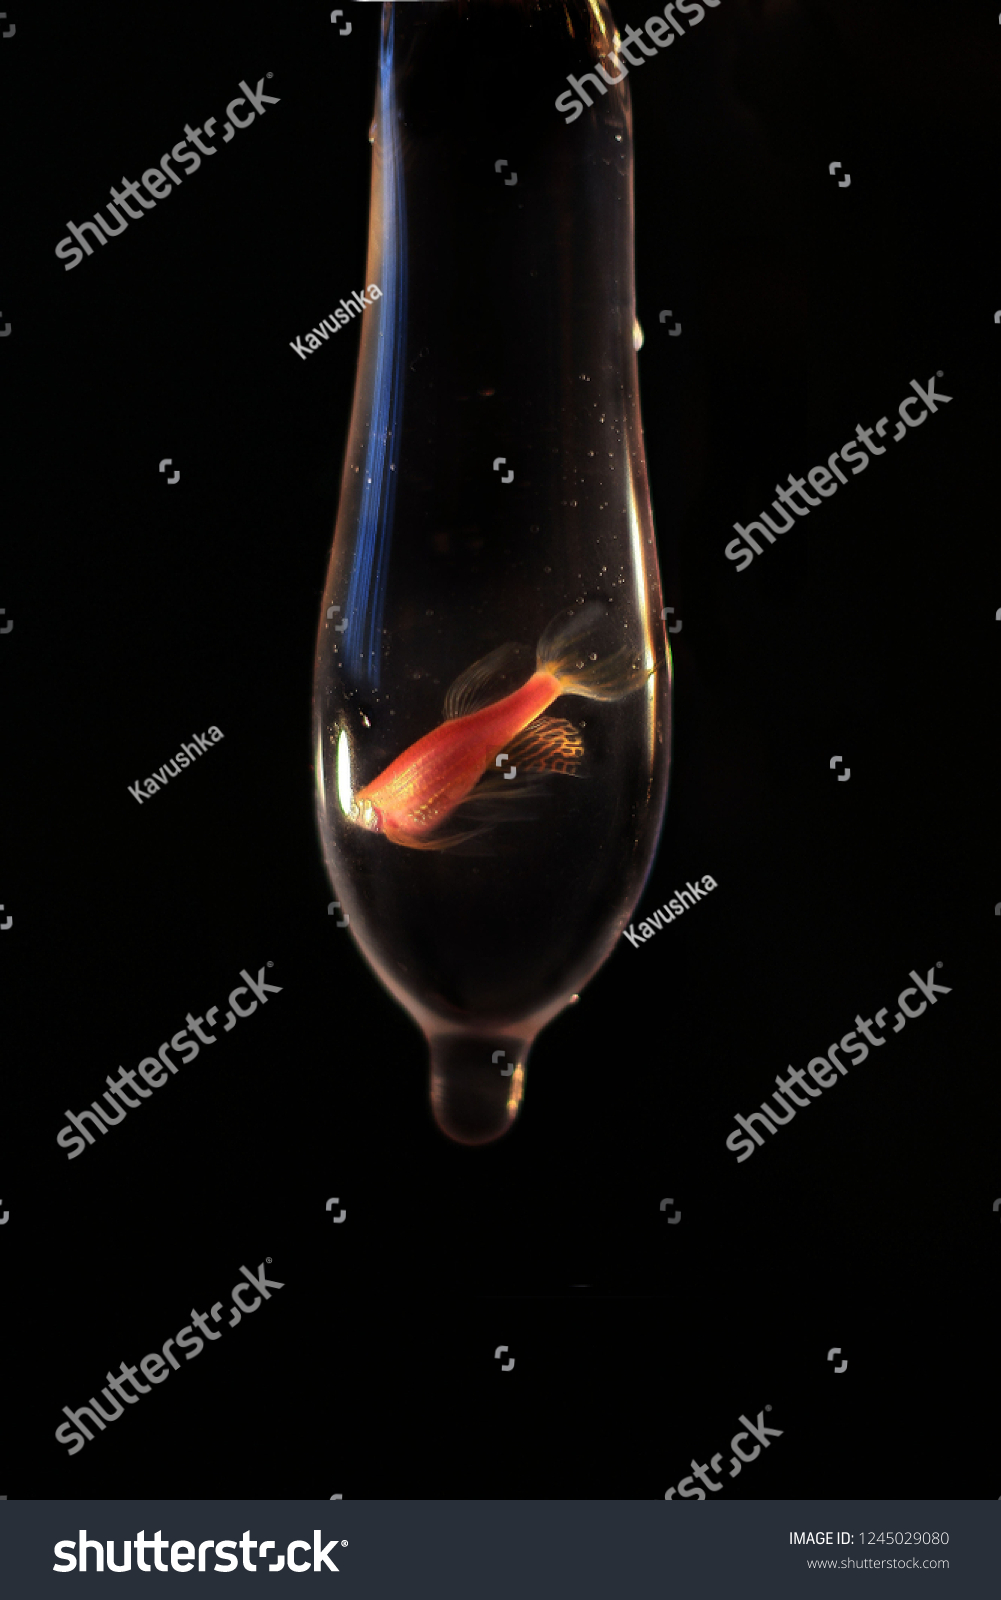 Condom Fish